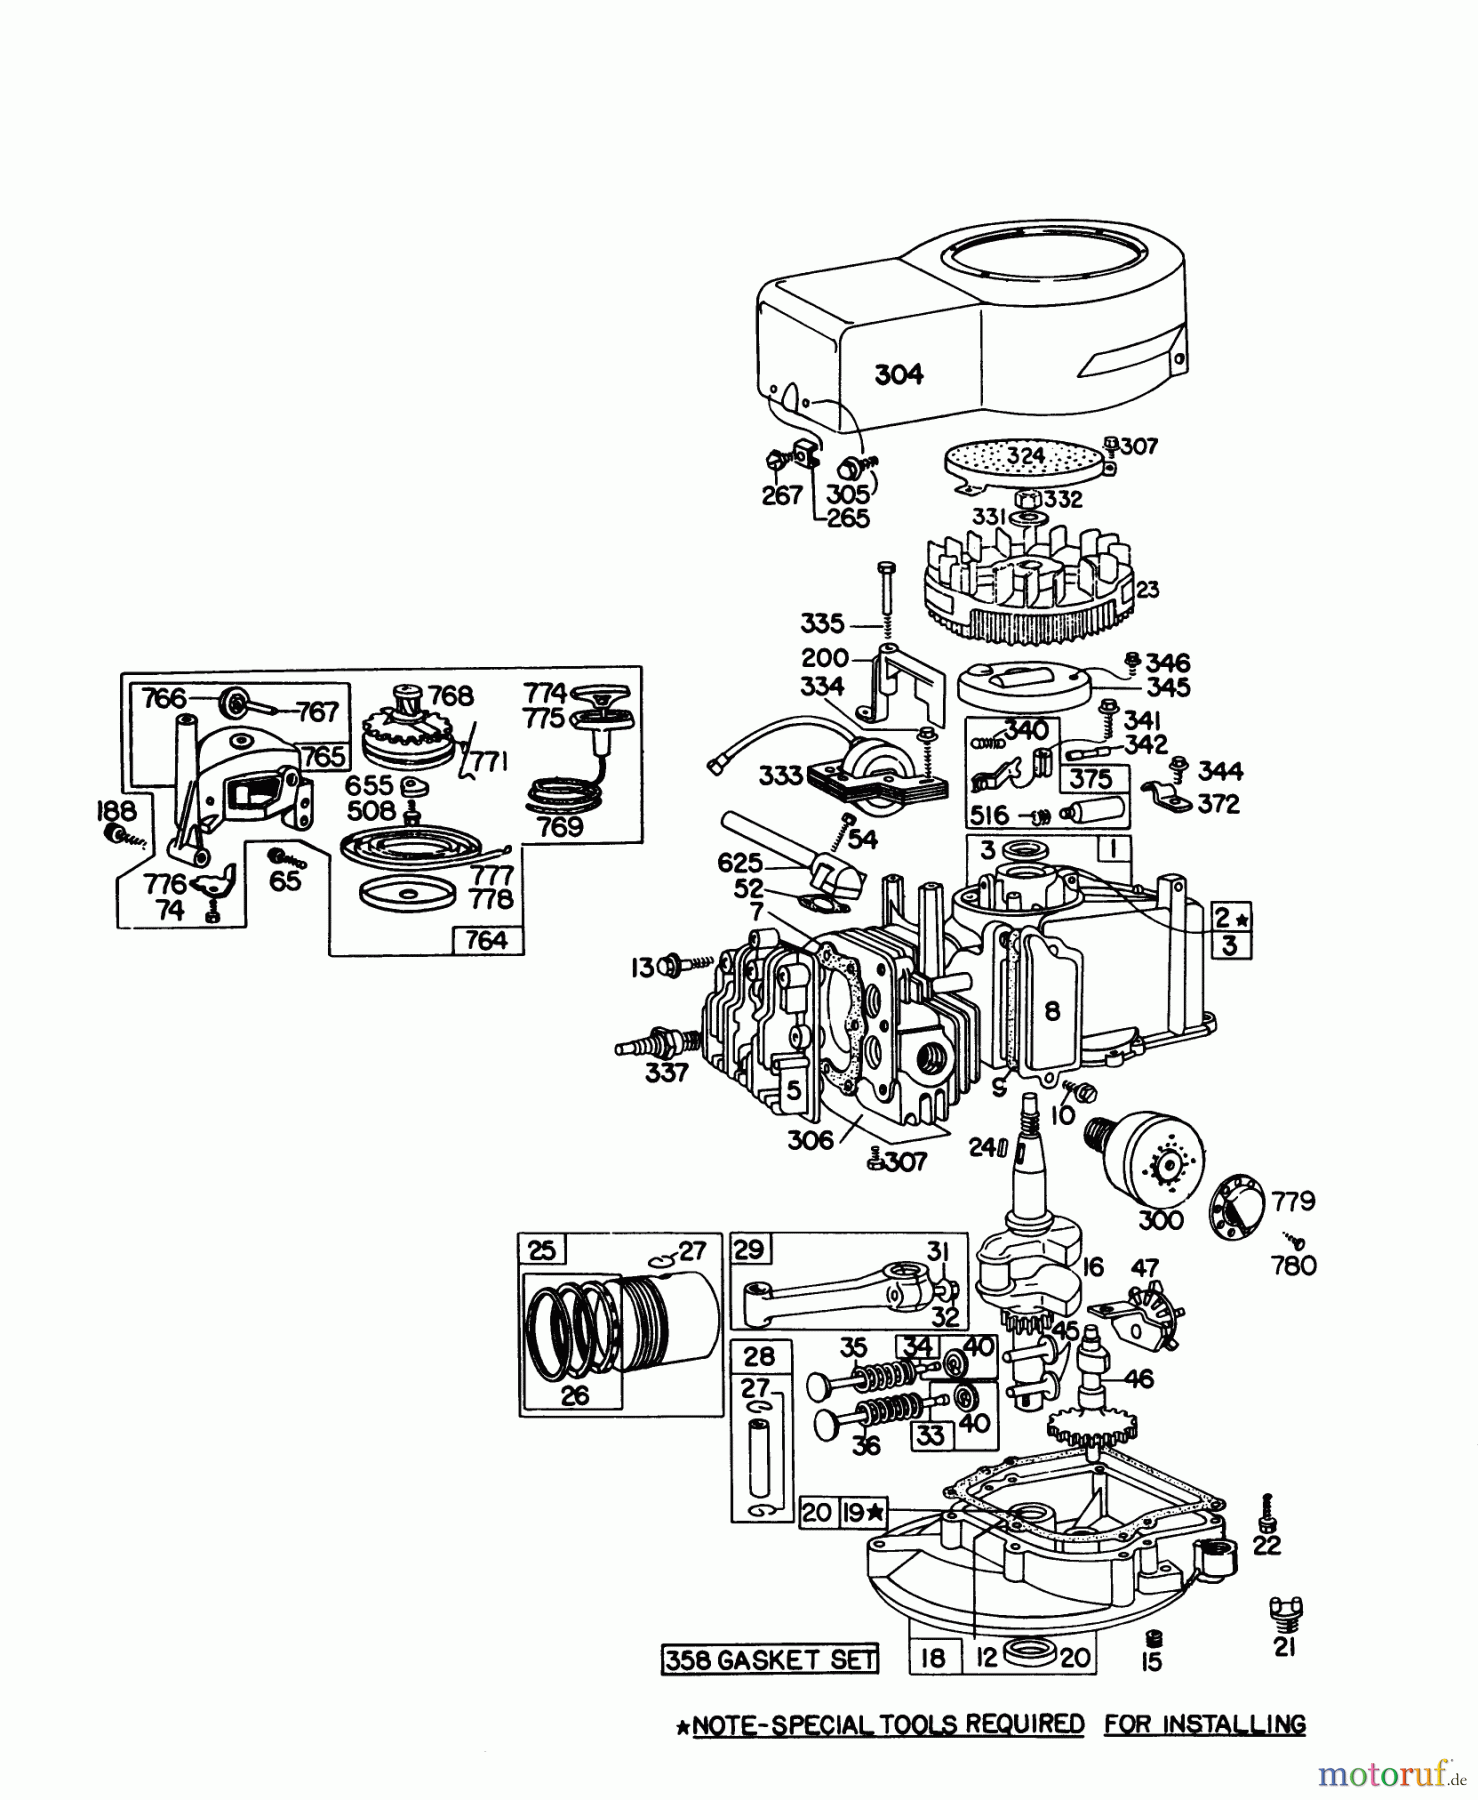  Toro Neu Mowers, Walk-Behind Seite 1 16155 - Toro Whirlwind II Lawnmower, 1978 (8000001-8999999) ENGINE BRIGGS & STRATTON MODEL 92908-1842-01 FOR 21